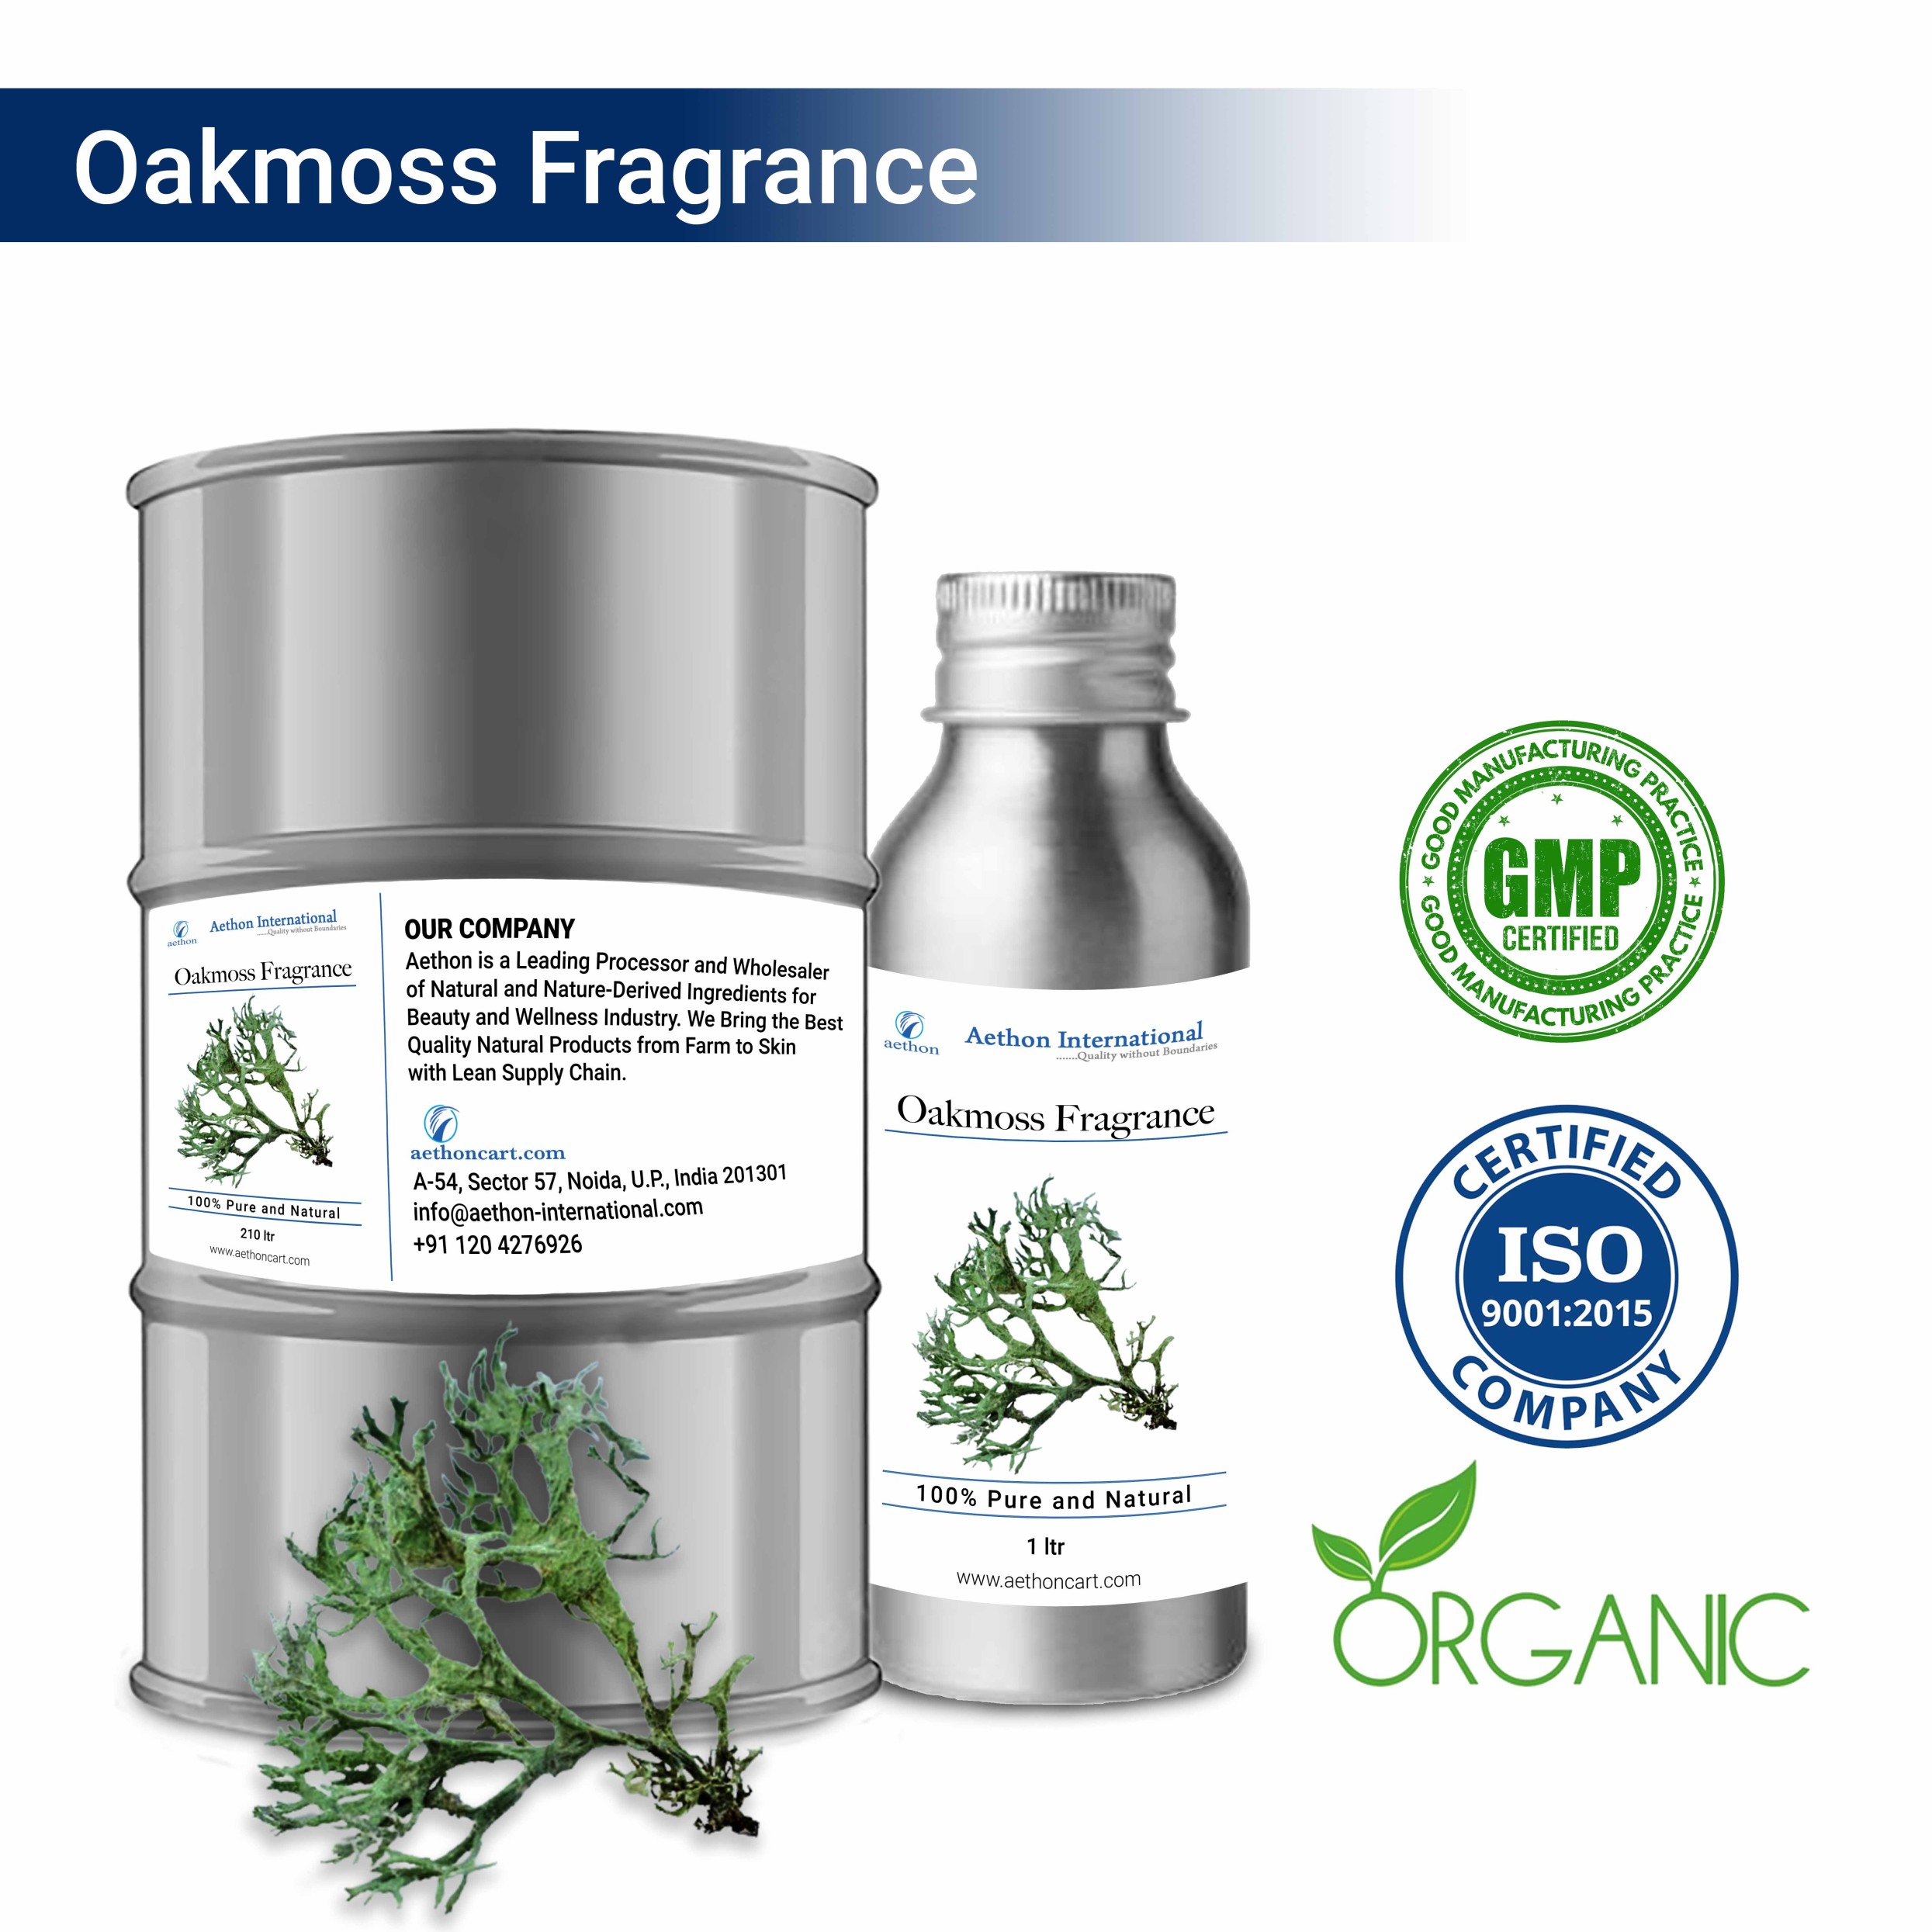 Oakmoss Fragrance